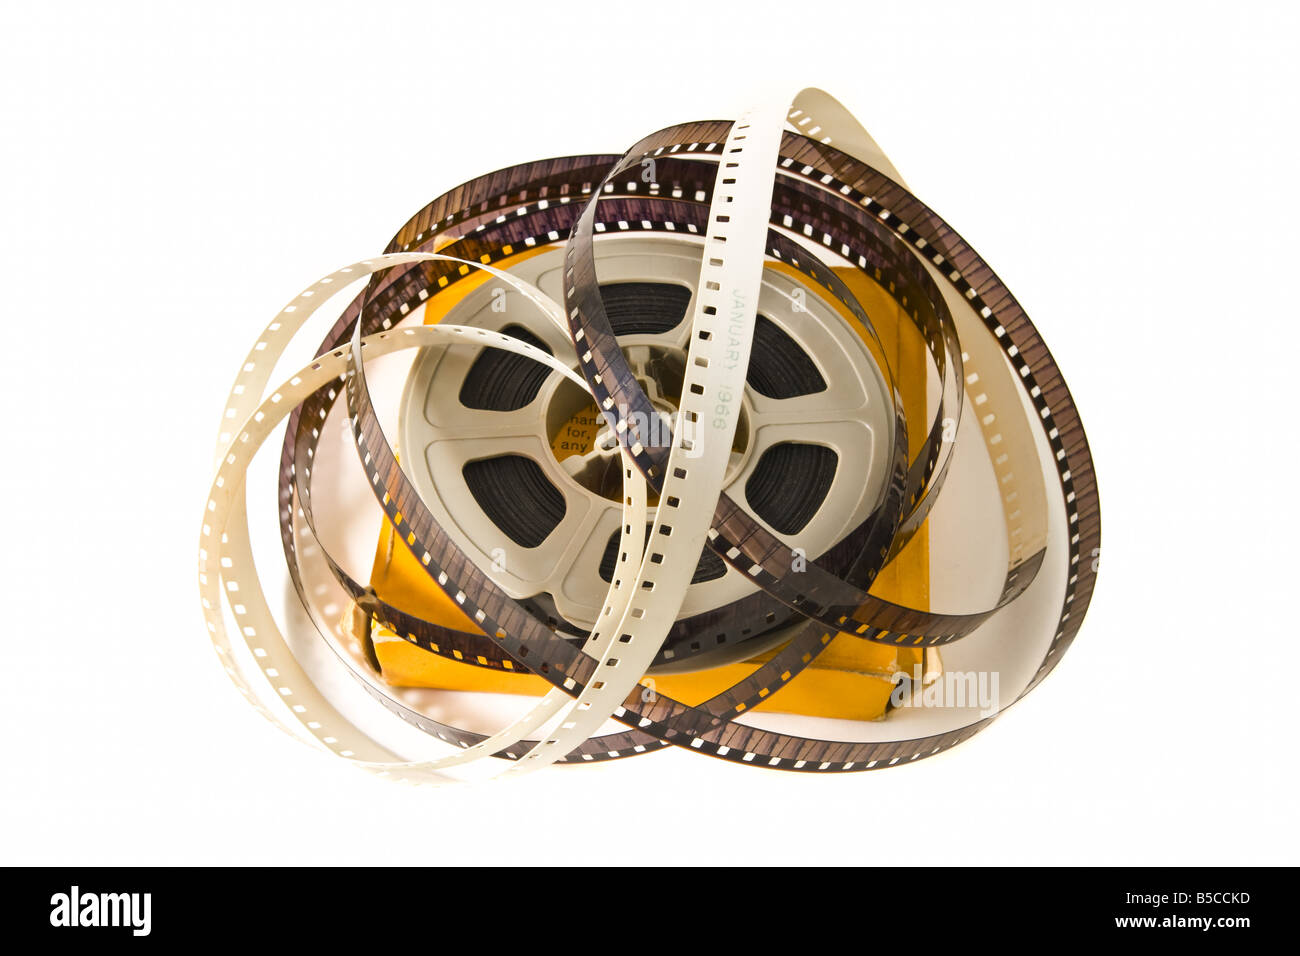 8mm film film plastique sur du vrai avec boîte jaune isolé sur fond blanc Banque D'Images